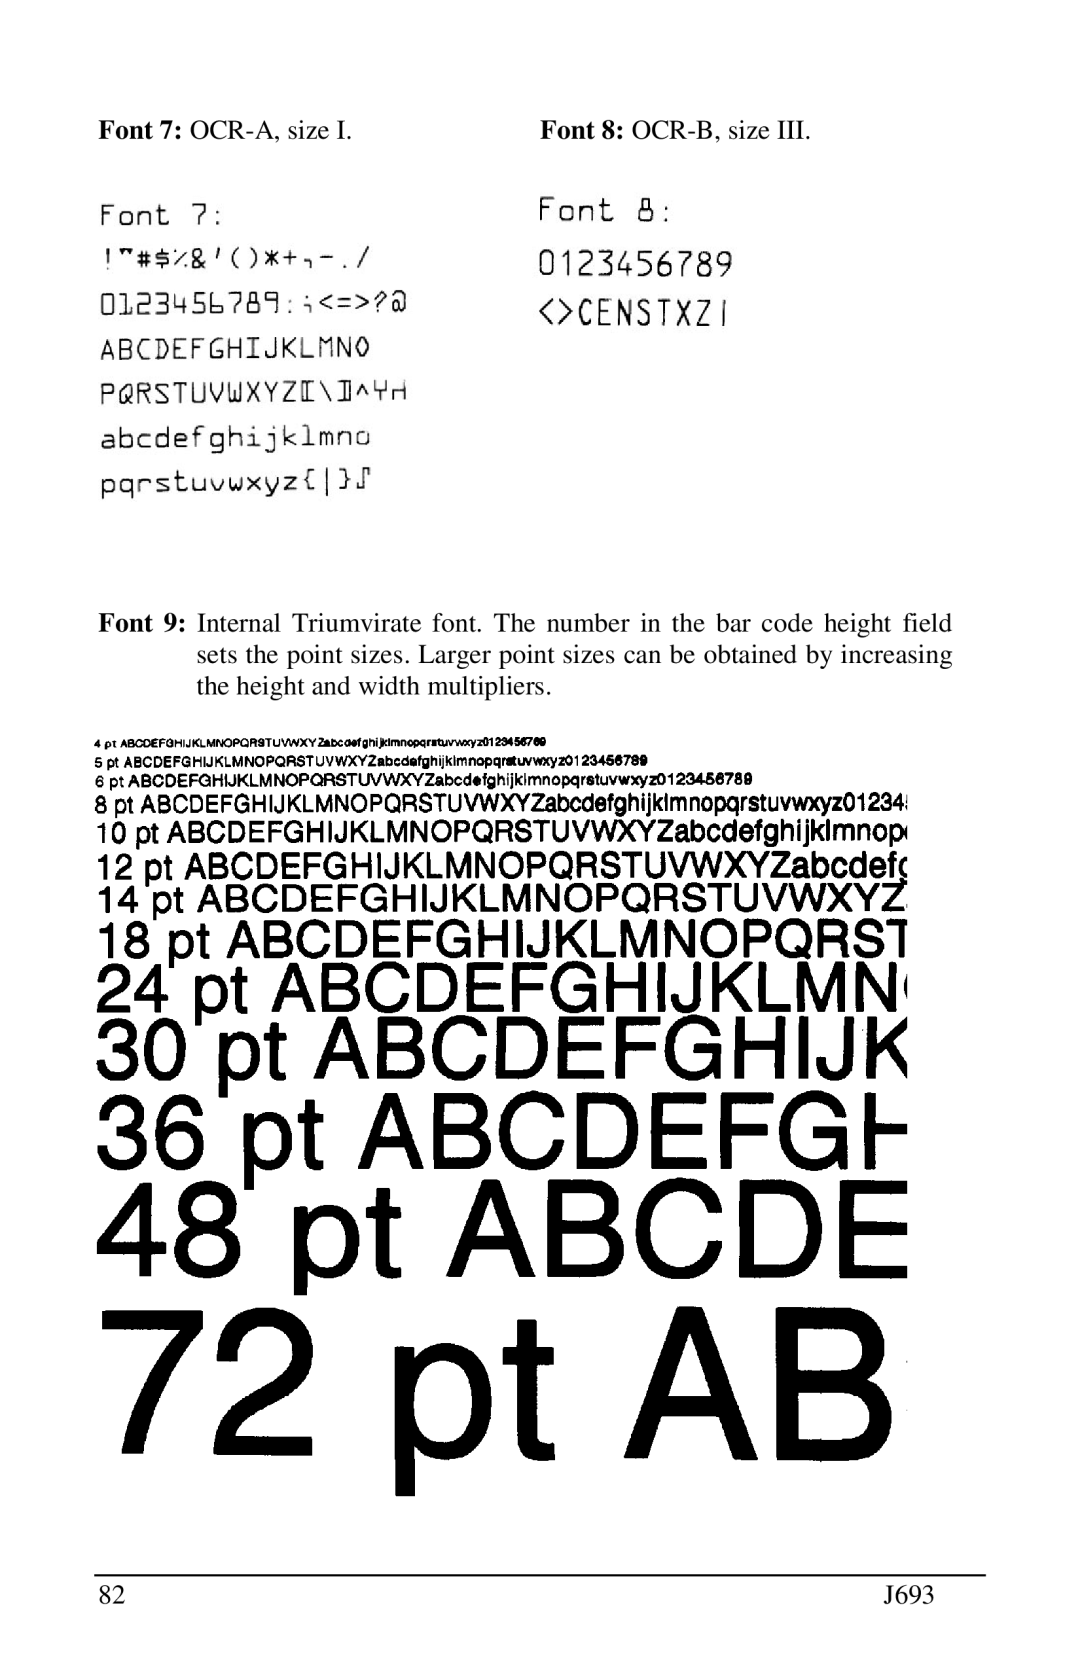 Pitney Bowes J693 manual Font 7 OCR-A, size, Font 8 OCR-B, size 